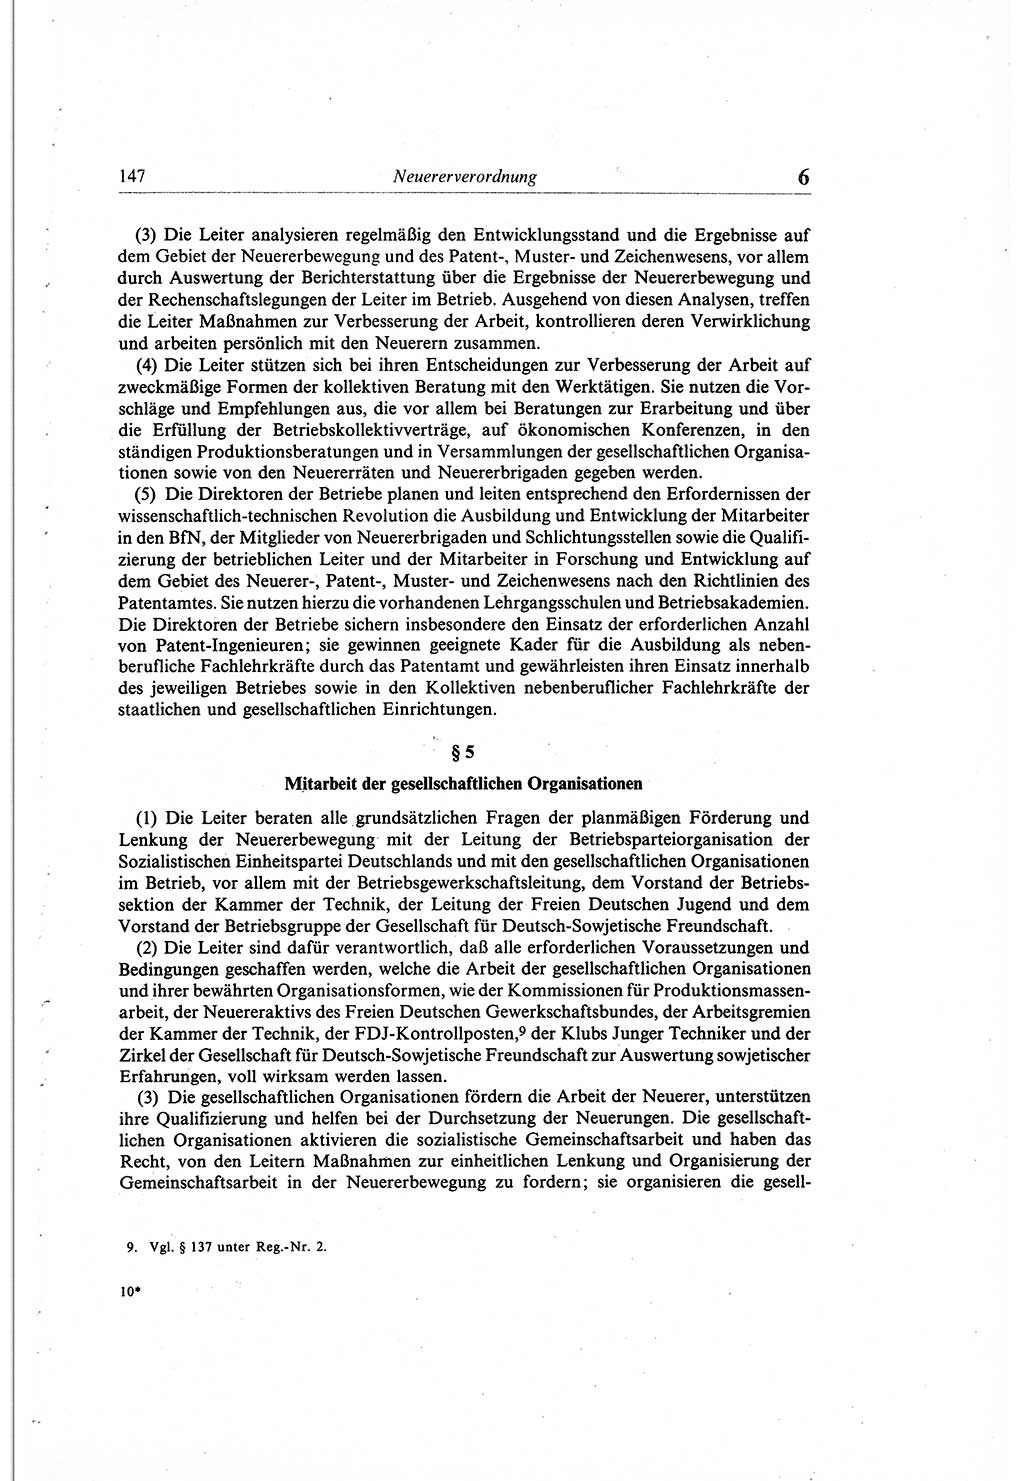 Gesetzbuch der Arbeit (GBA) und andere ausgewählte rechtliche Bestimmungen [Deutsche Demokratische Republik (DDR)] 1968, Seite 147 (GBA DDR 1968, S. 147)